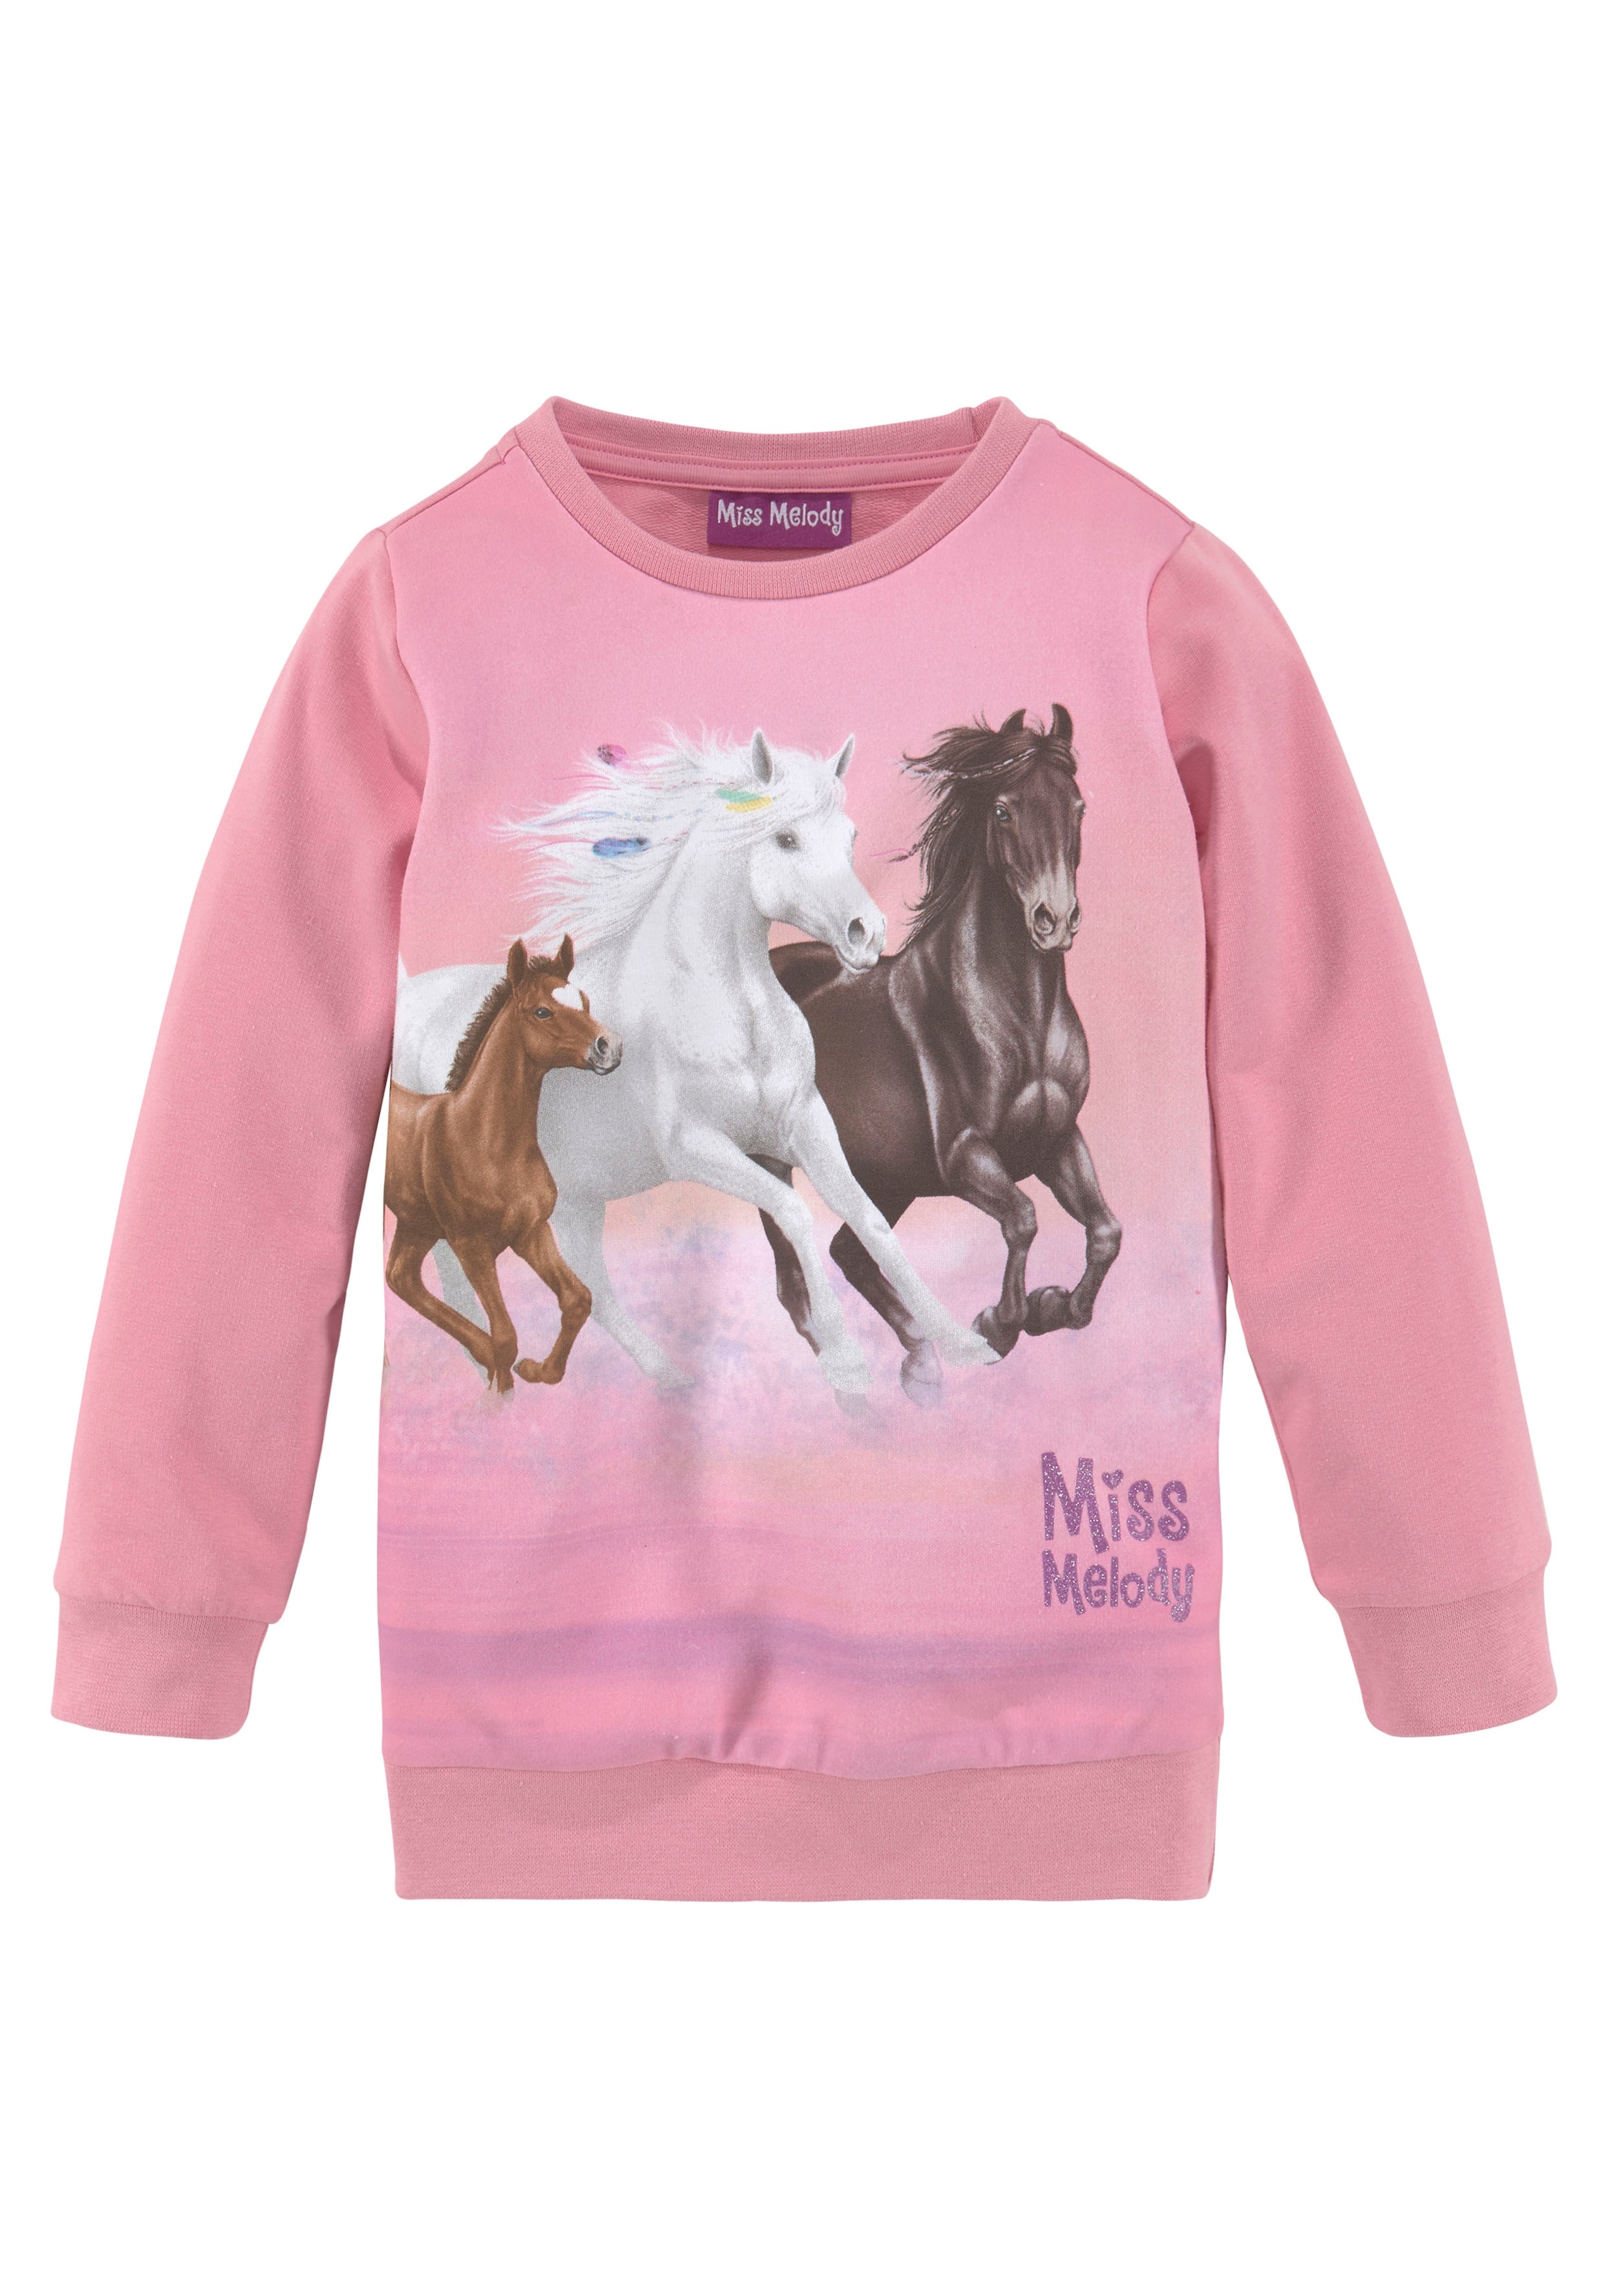 Miss Melody Longsweatshirt, für Pferdefreunde OTTO bei online